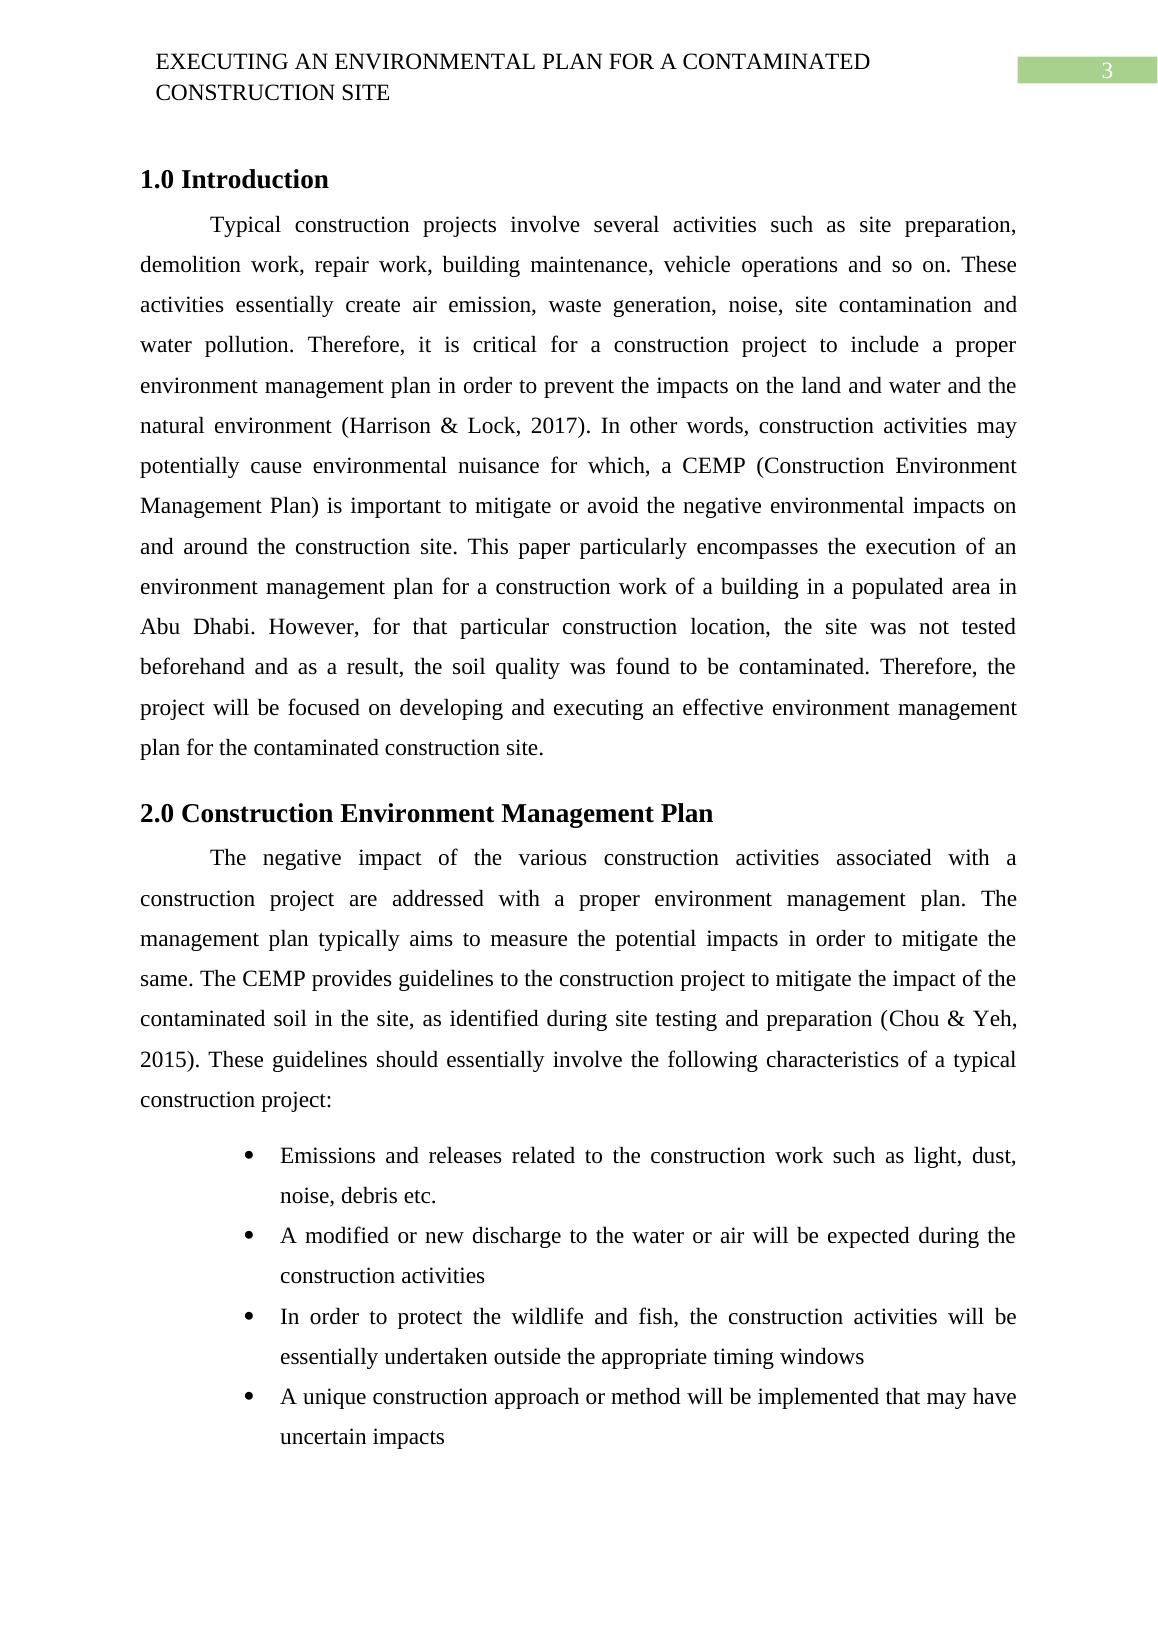 Executing an Environmental Plan for a Contaminated Construction Site_3